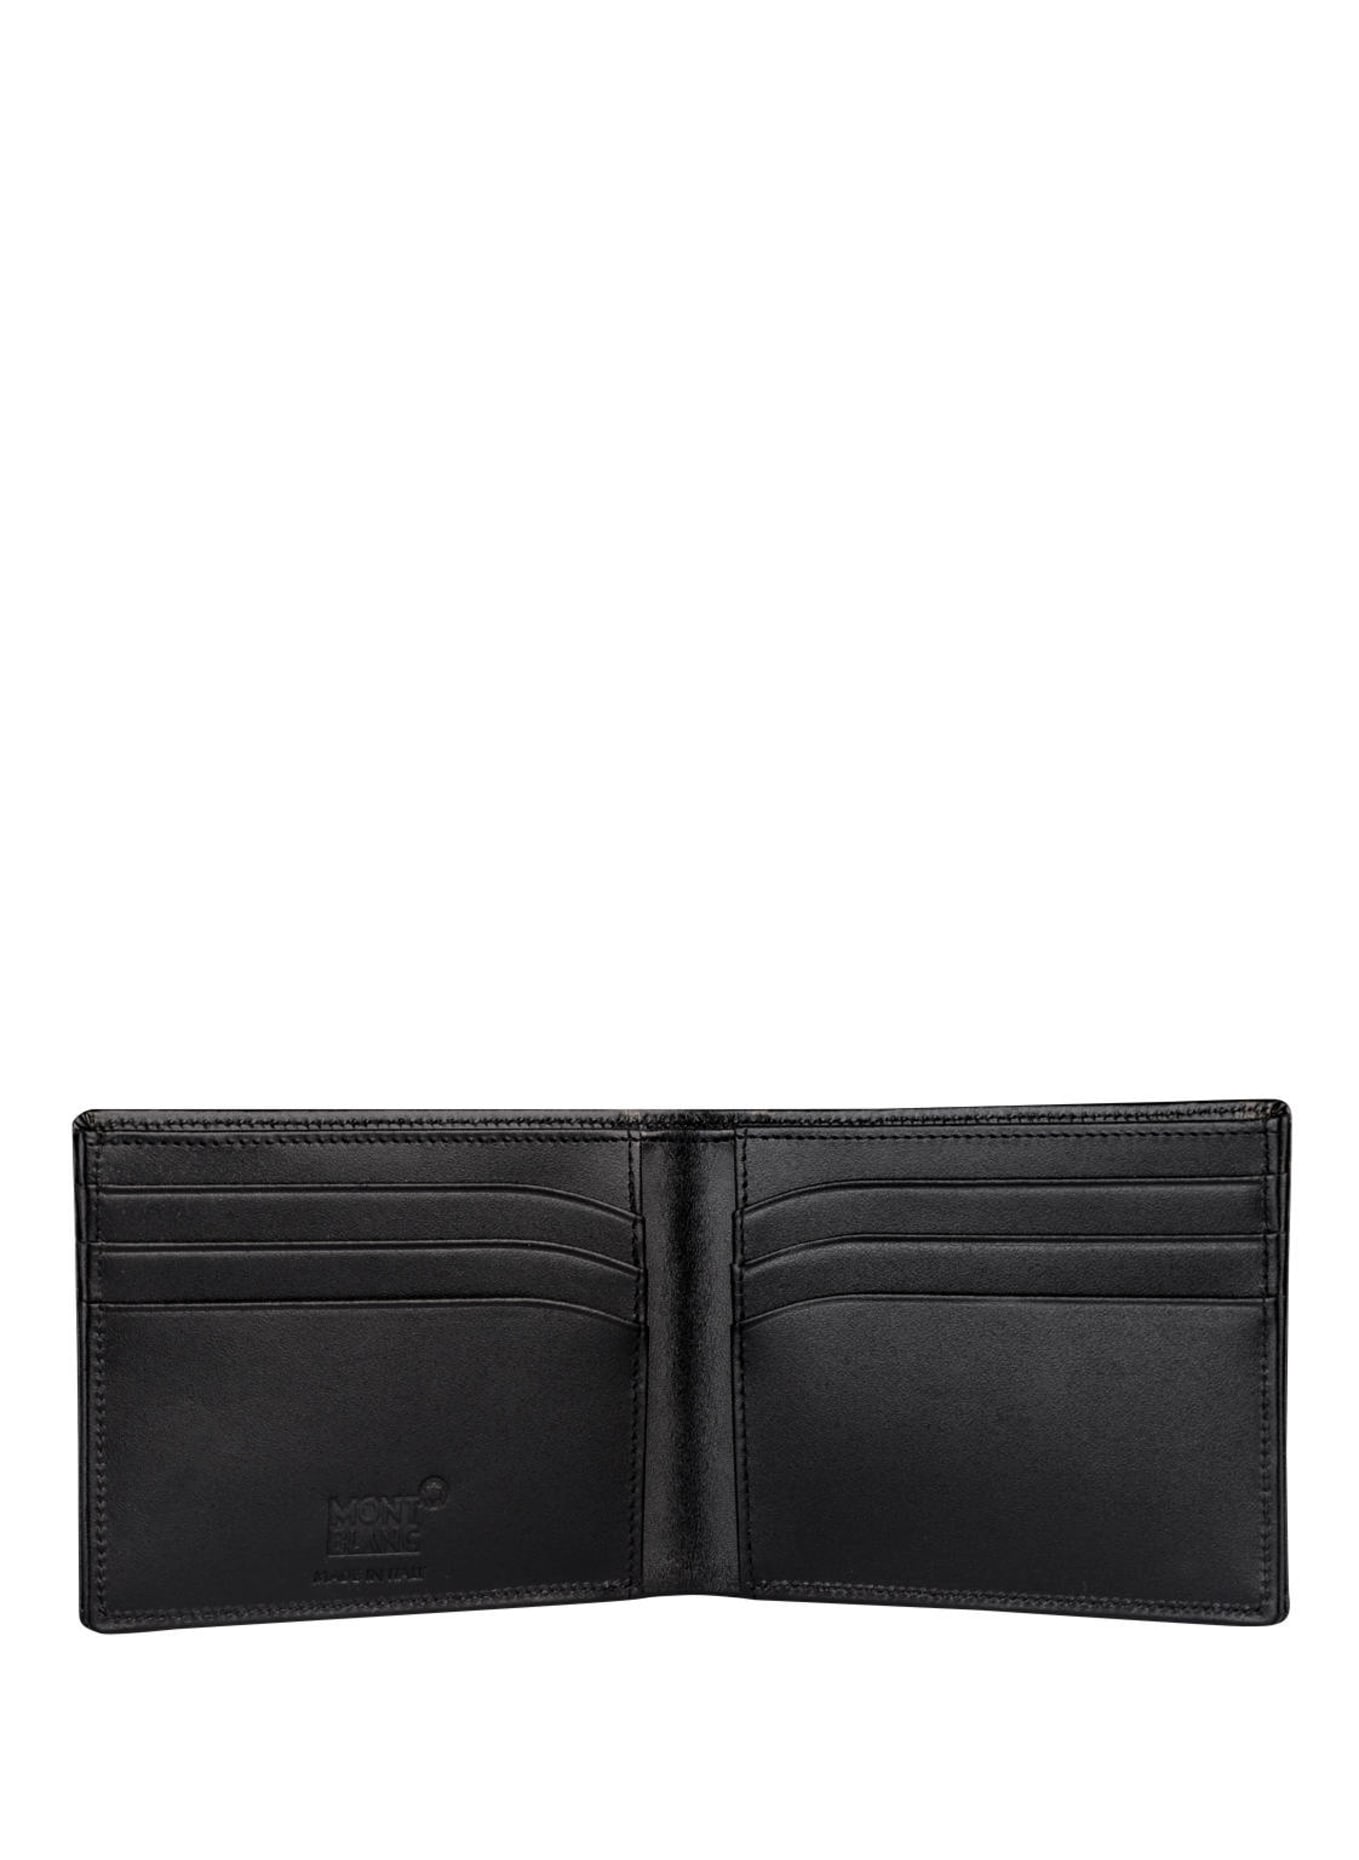 MONTBLANC Wallet MEISTERSTÜCK 6CC, Color: BLACK (Image 2)